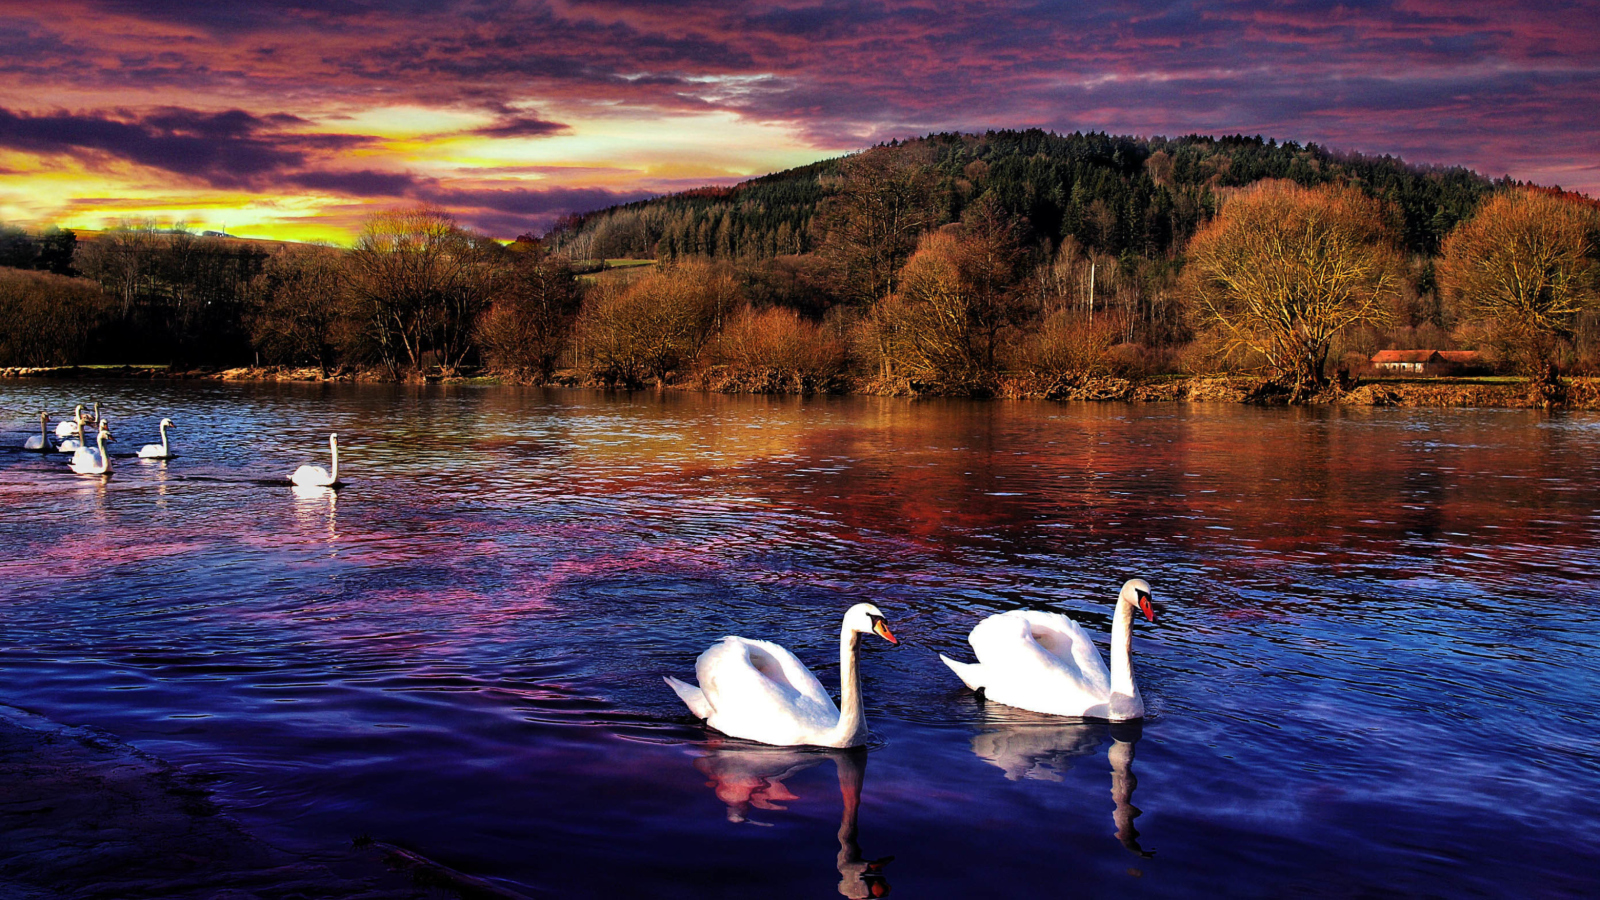 Обои Swan Lake 1600x900